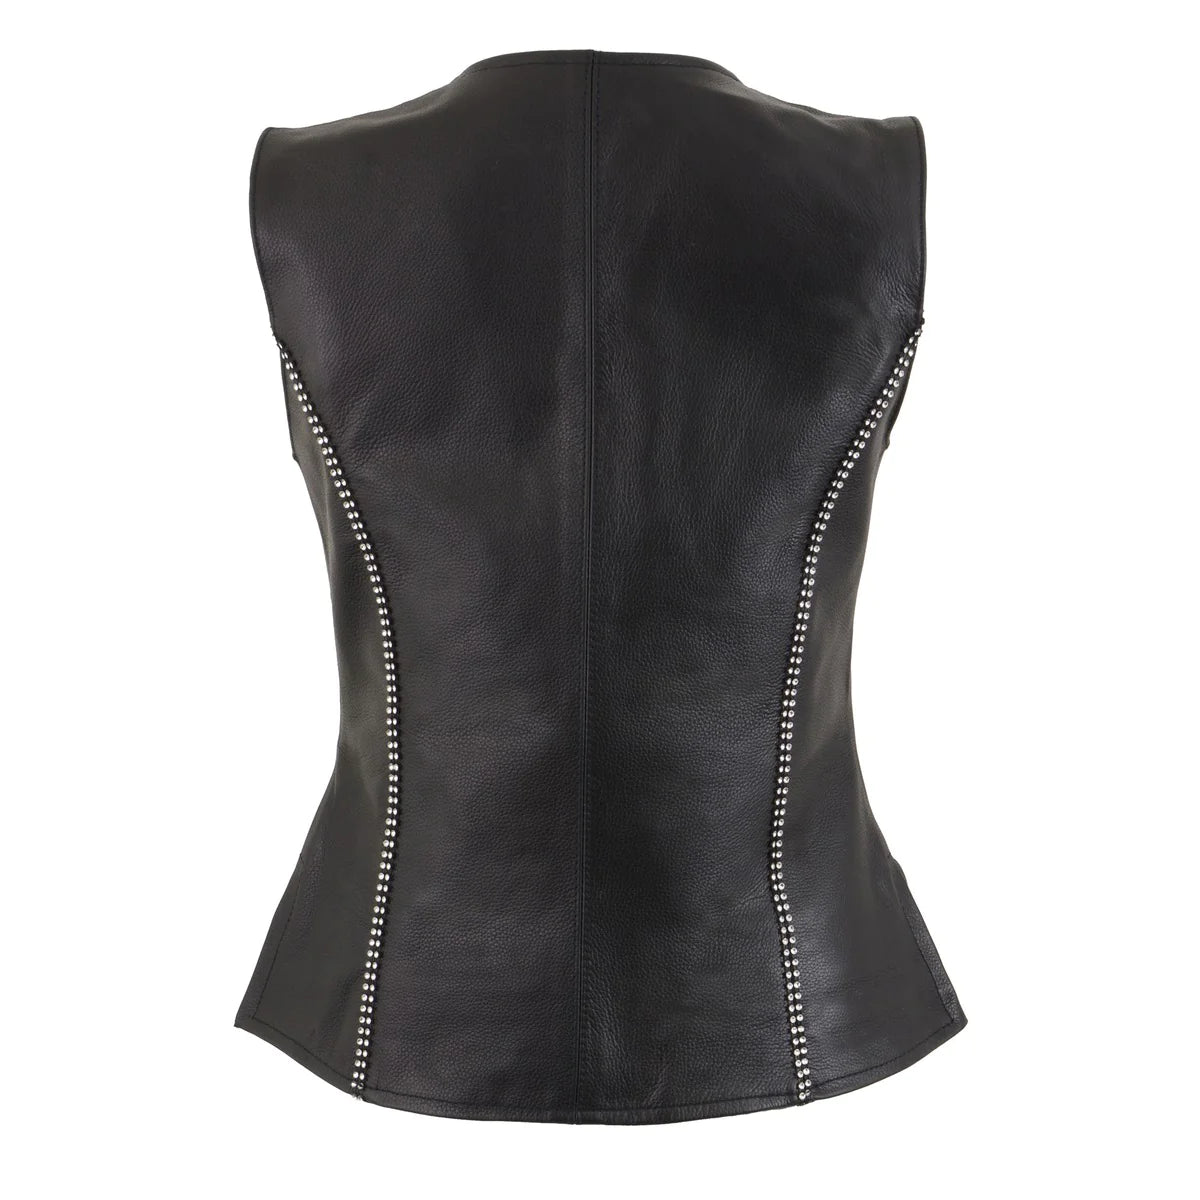 Women's Black Leather V-Neck Zipper Vest with Rhinestone Bling Detail